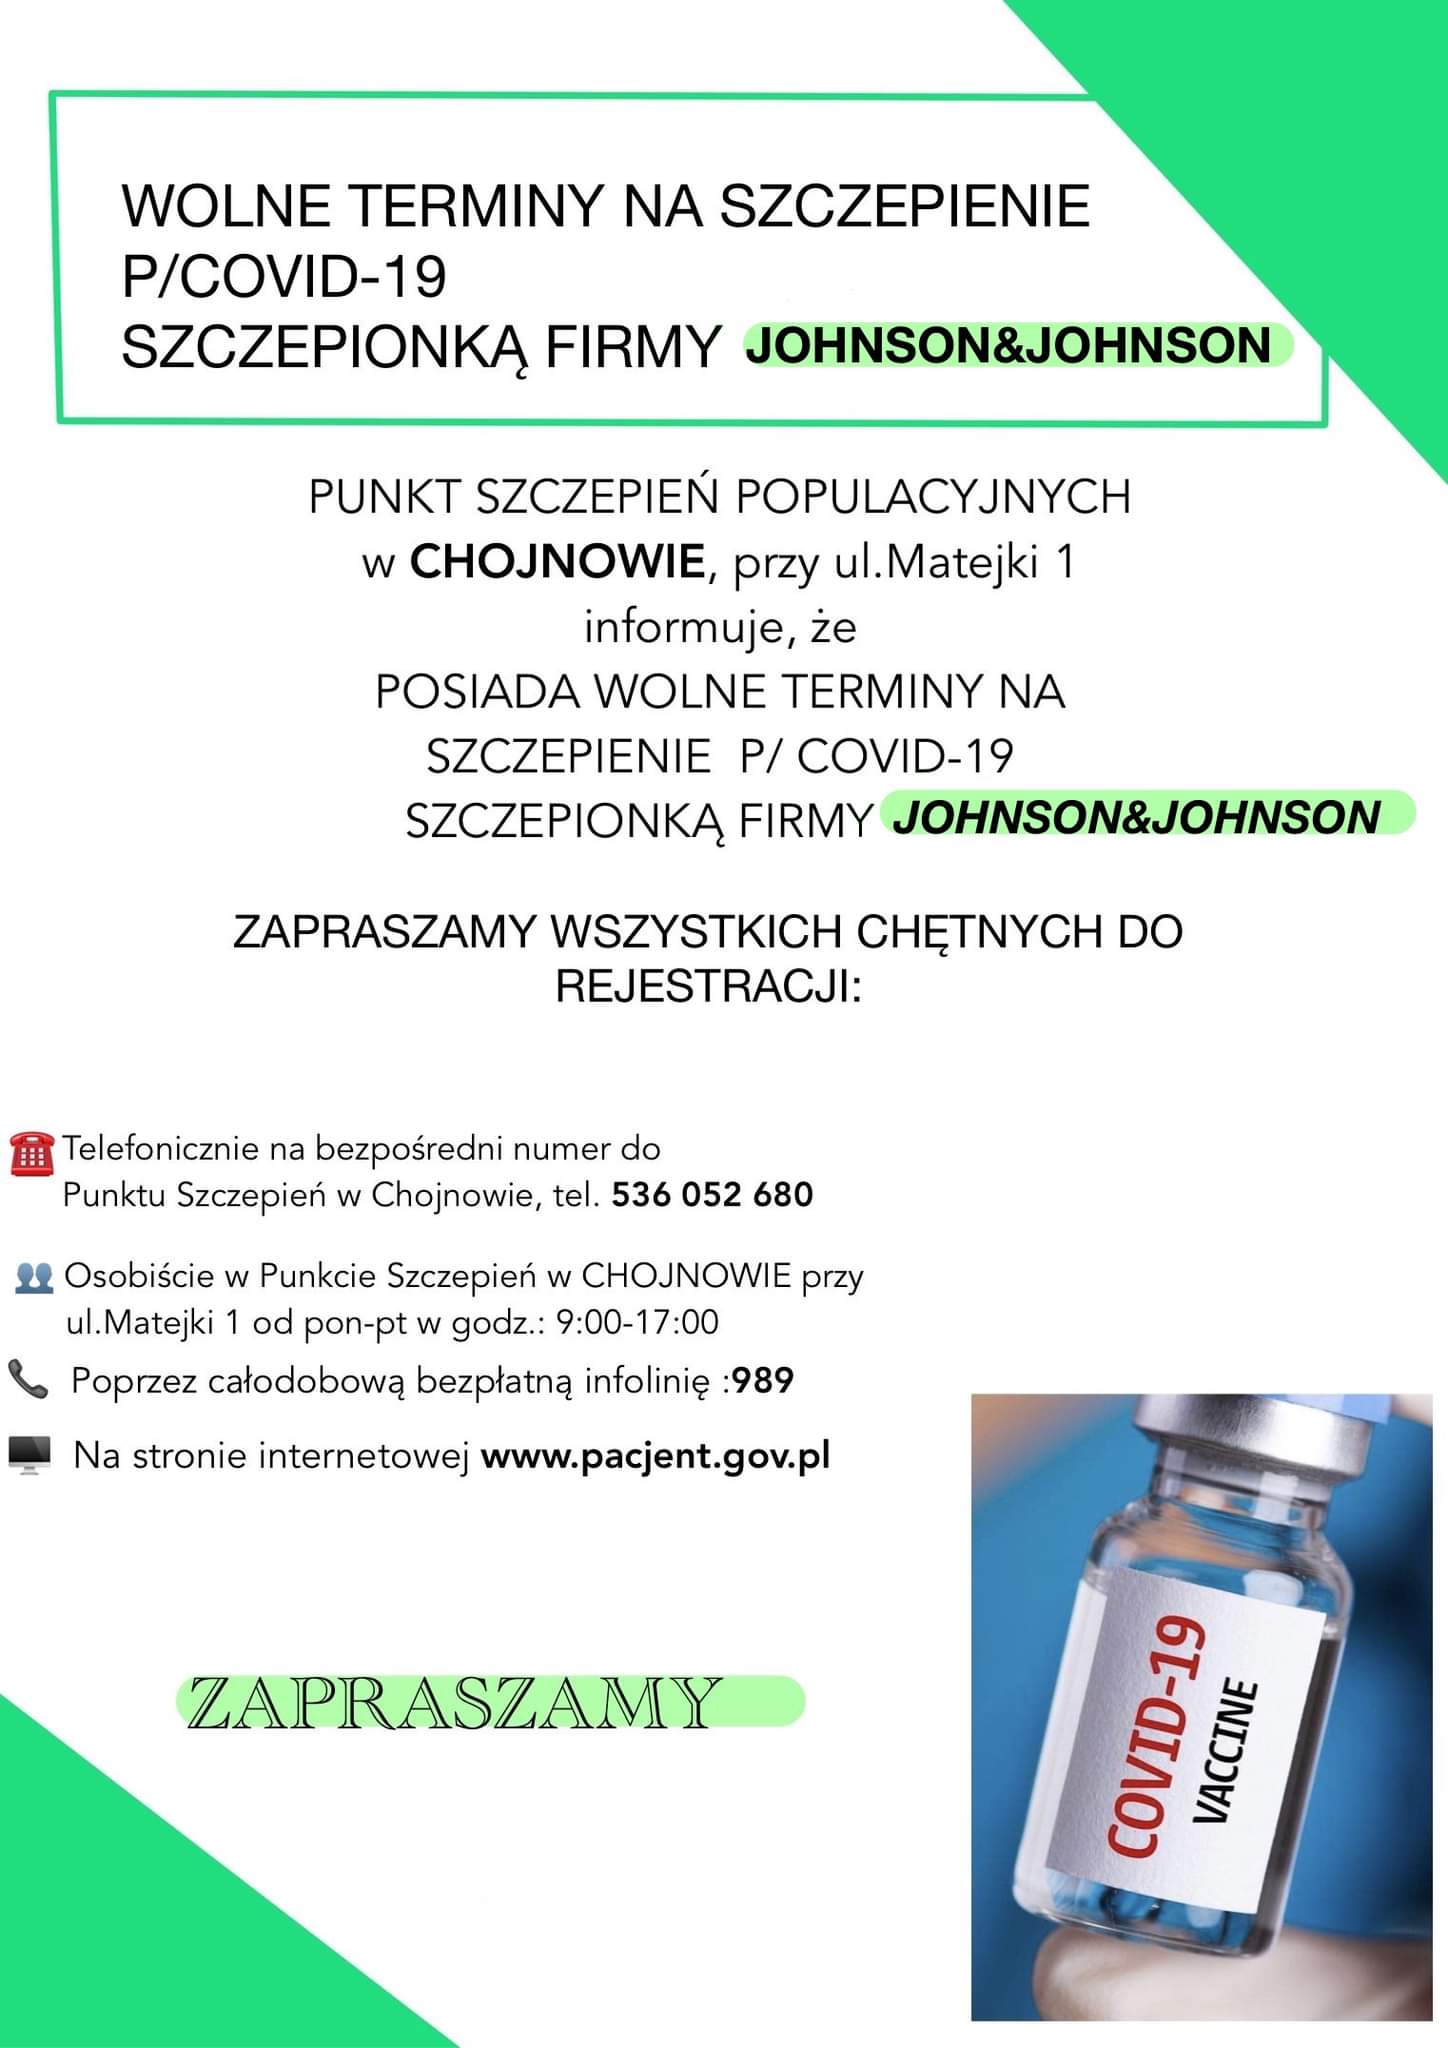 Platakt: Uprzejmie informujemy, że w  Punkt Szczepień Populacyjnych w Chojnowie  (ul. Matejki 1) posiada wolne terminy na szczepienie przeciw Covid-19 jednodawkową szczepionką Johnson & Johnson. 